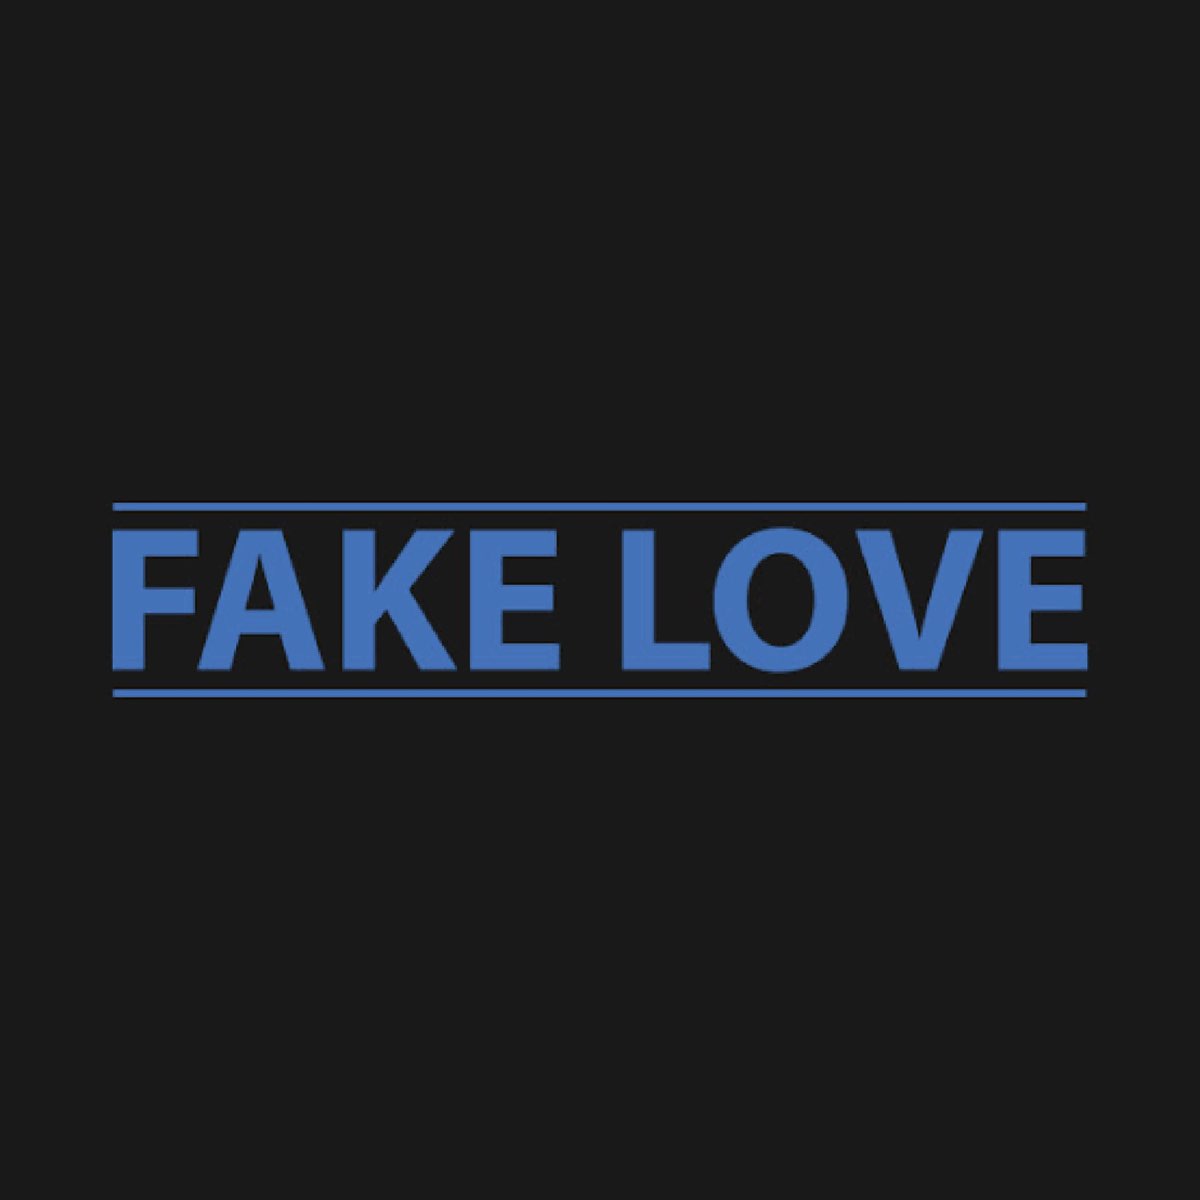 I love fake. Fake Love. Fake Love логотип. Fake Love обложка. Fake Love надпись.